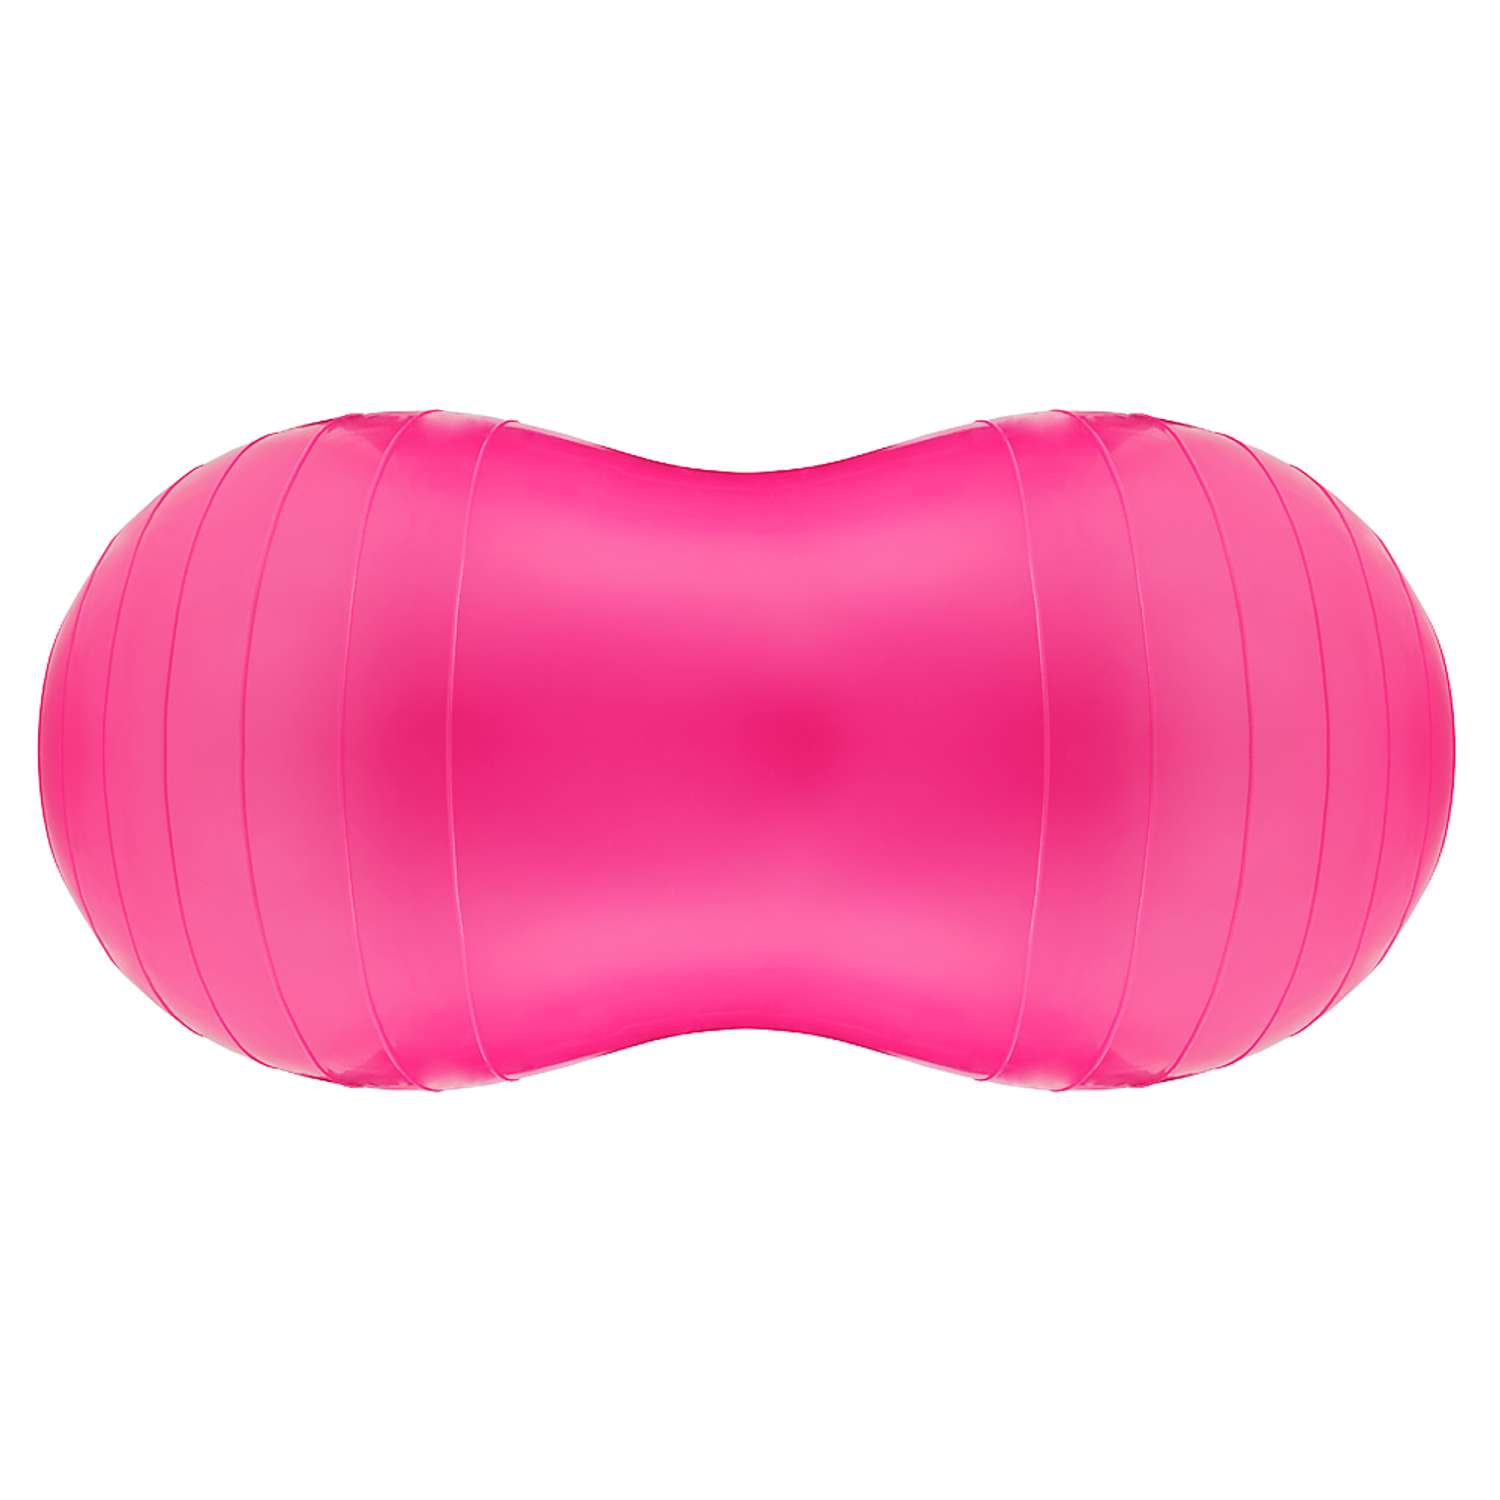 Гимнастический сдвоенный мяч STRONG BODY фитбол арахис 75х35 см розовый Насос в комплекте - фото 3